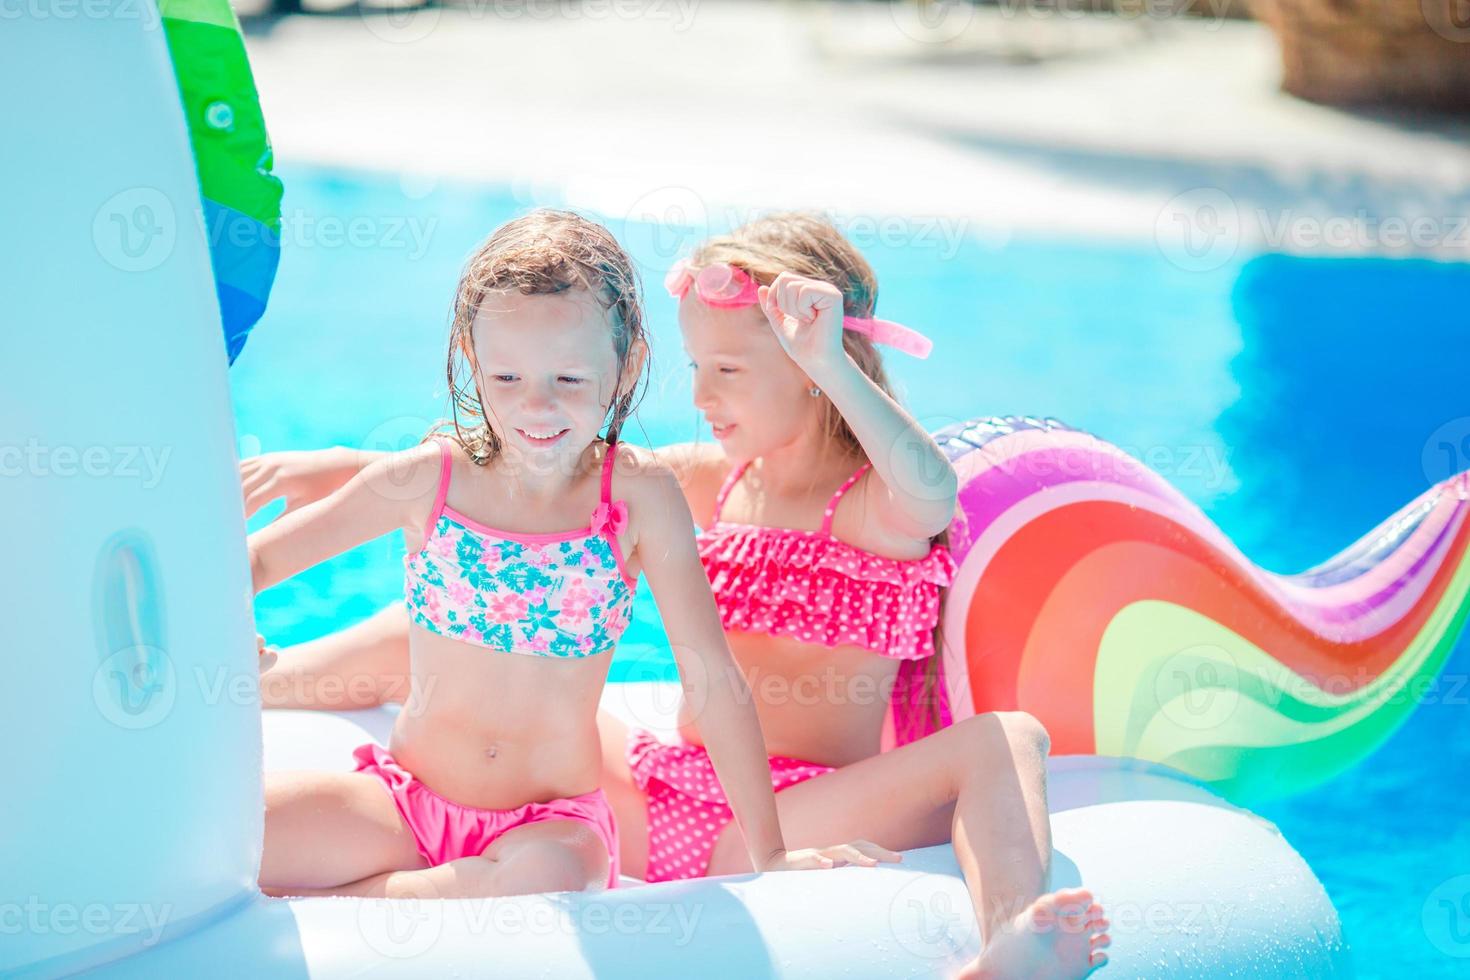 chacara florata: meninas lindas se divertindo muito na piscina,domingo de  muito sol